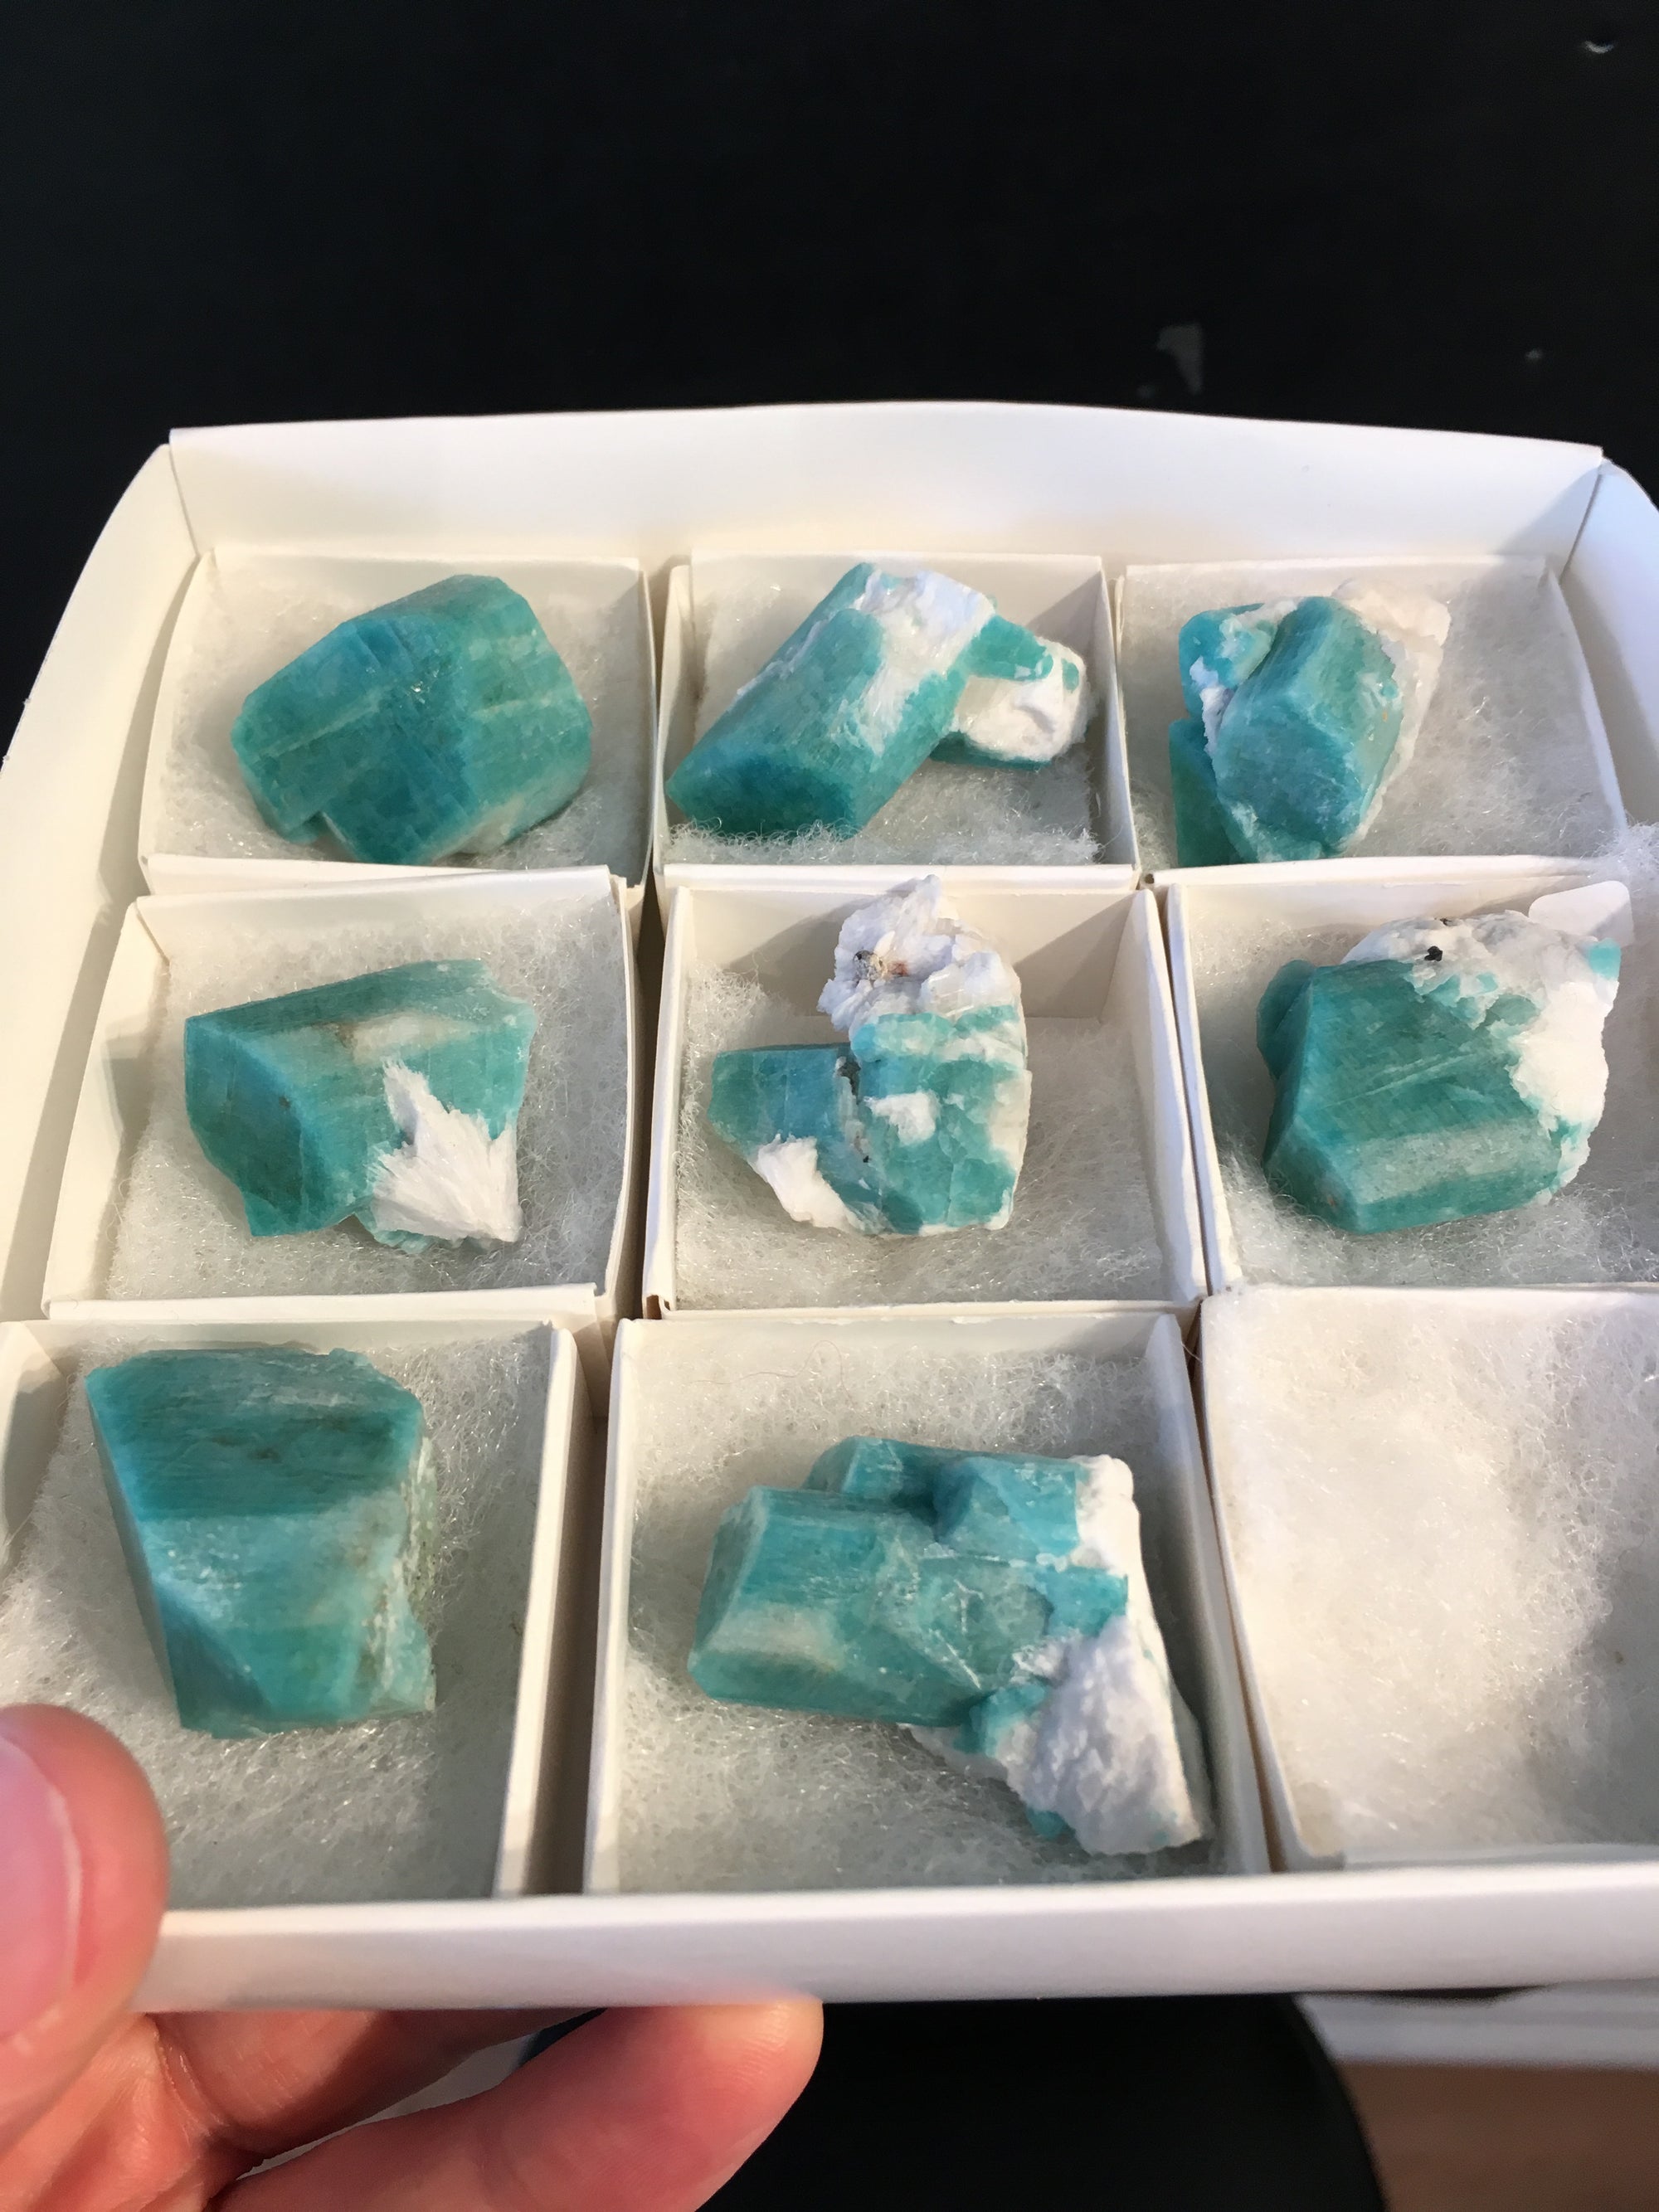 1 Amazonite Crystal, Teller County, Colorado